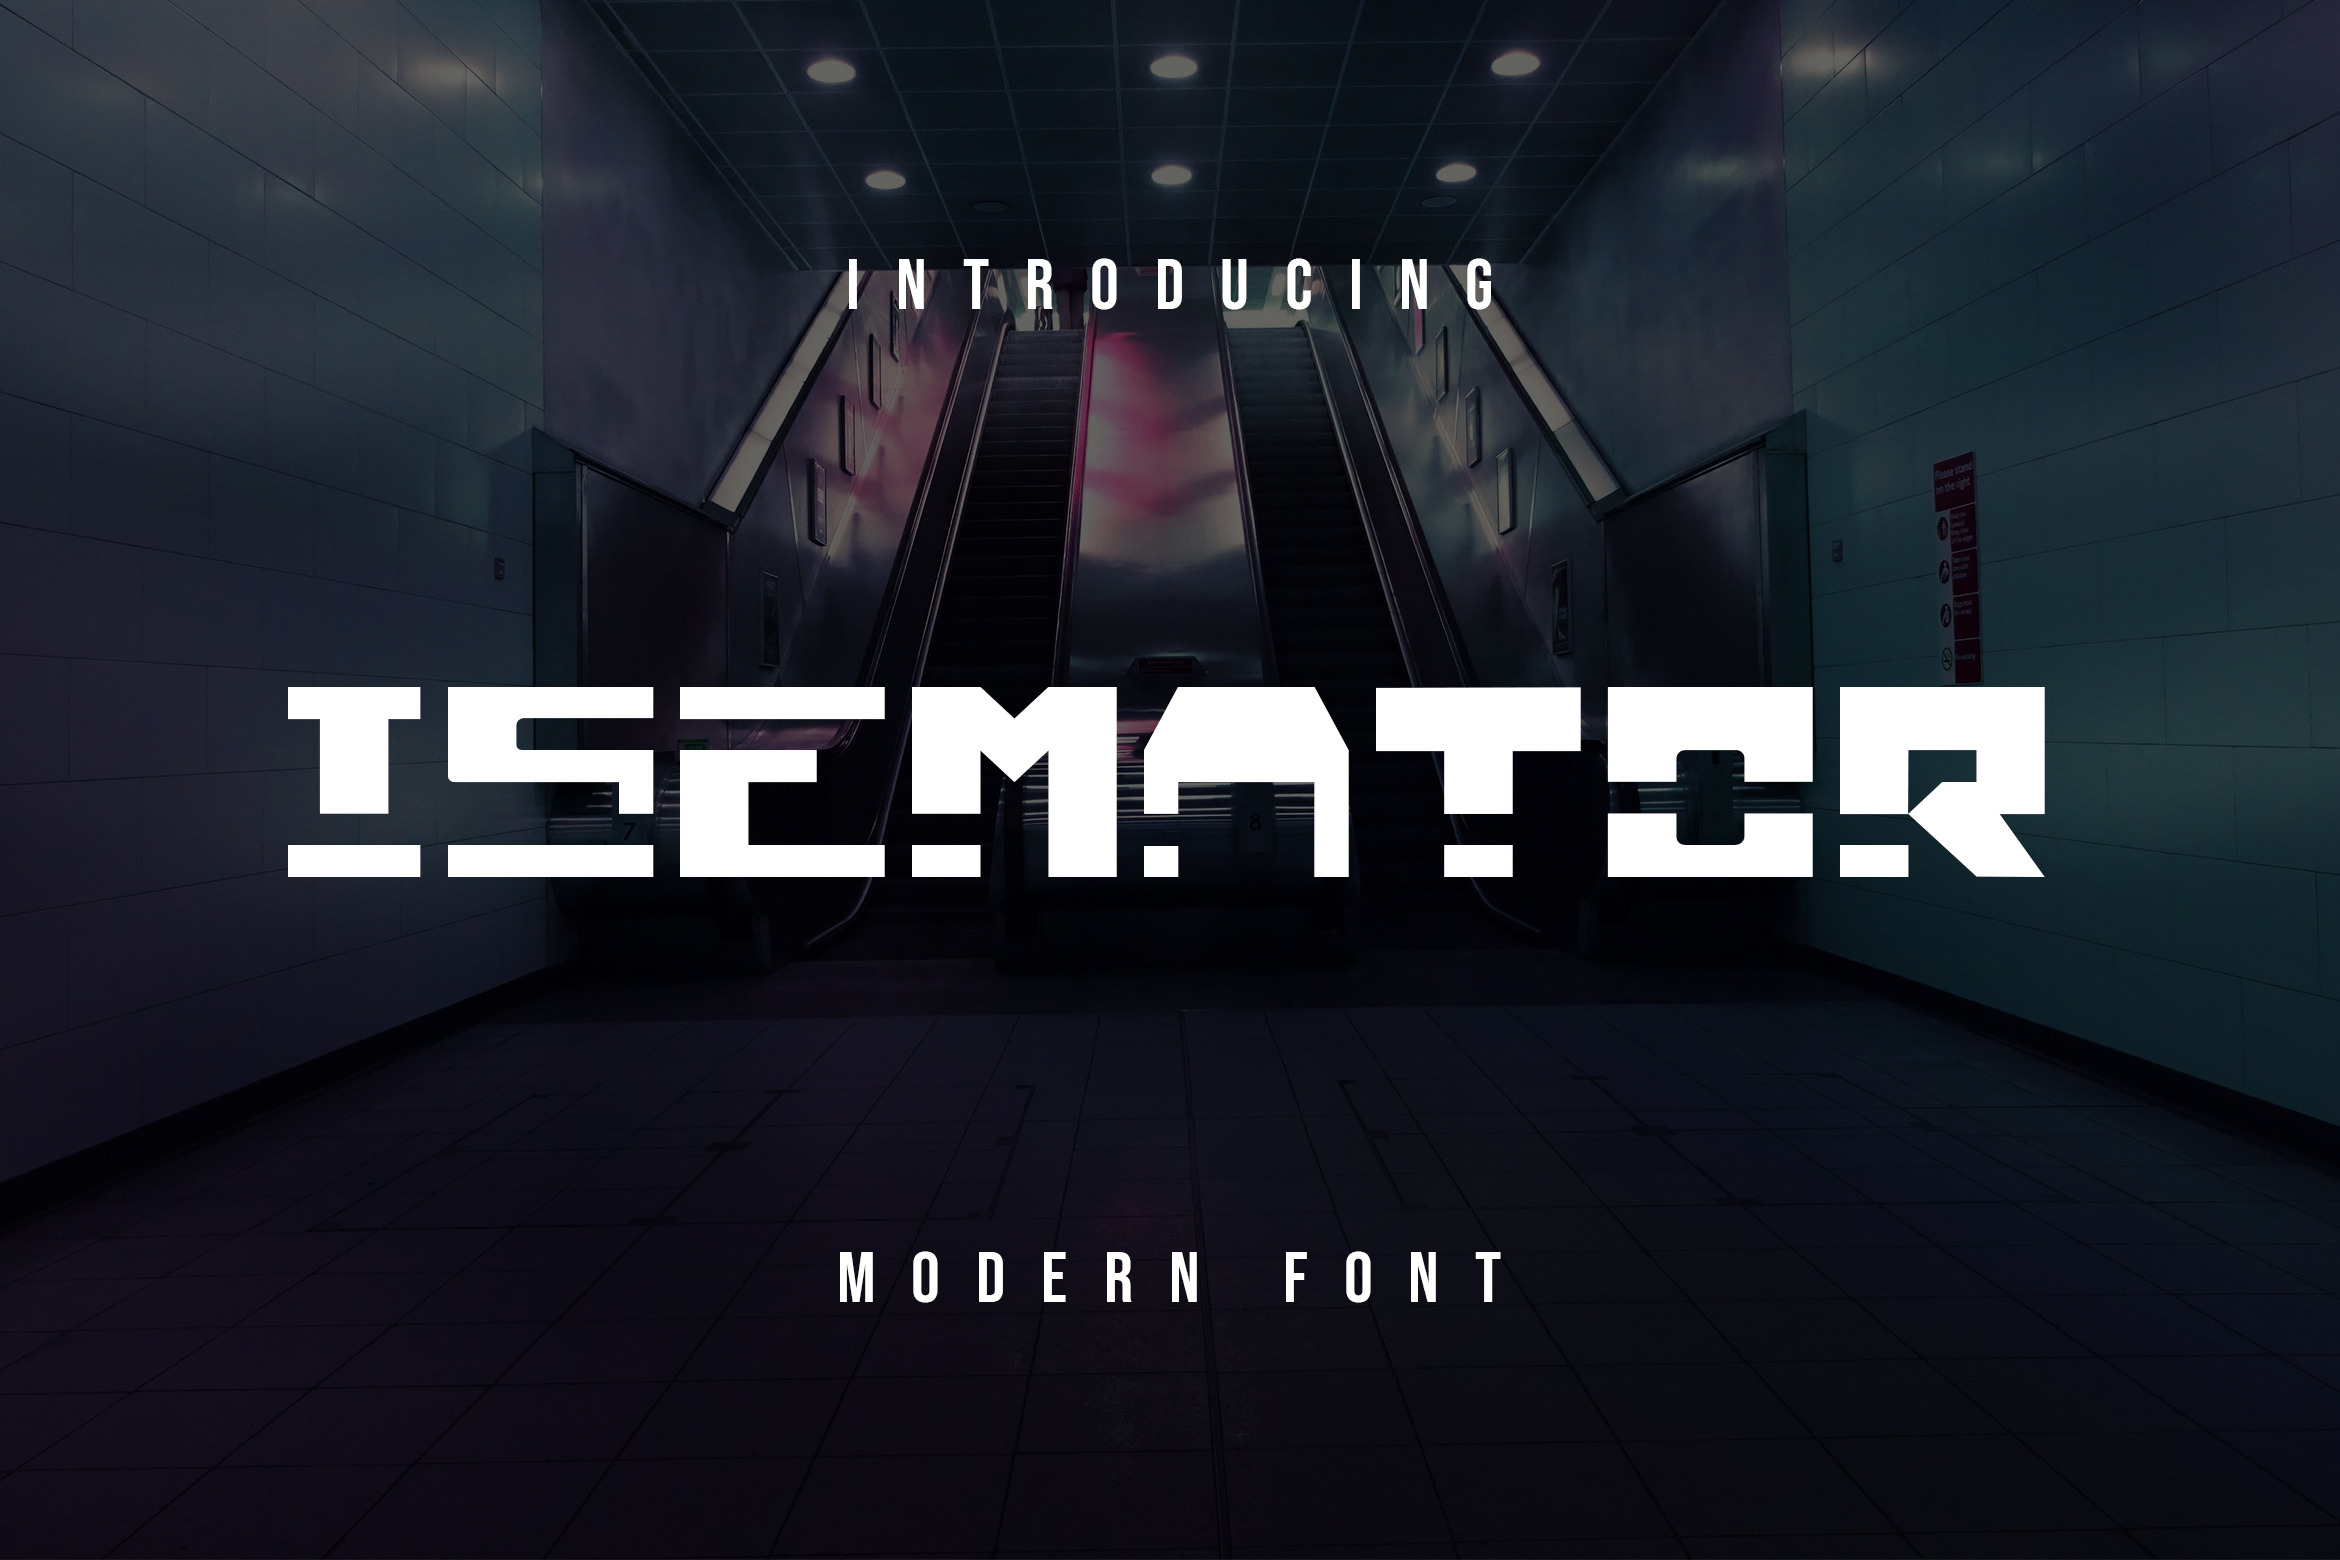 Isemator Modern Font, a Blackletter Font by zerologicstudio